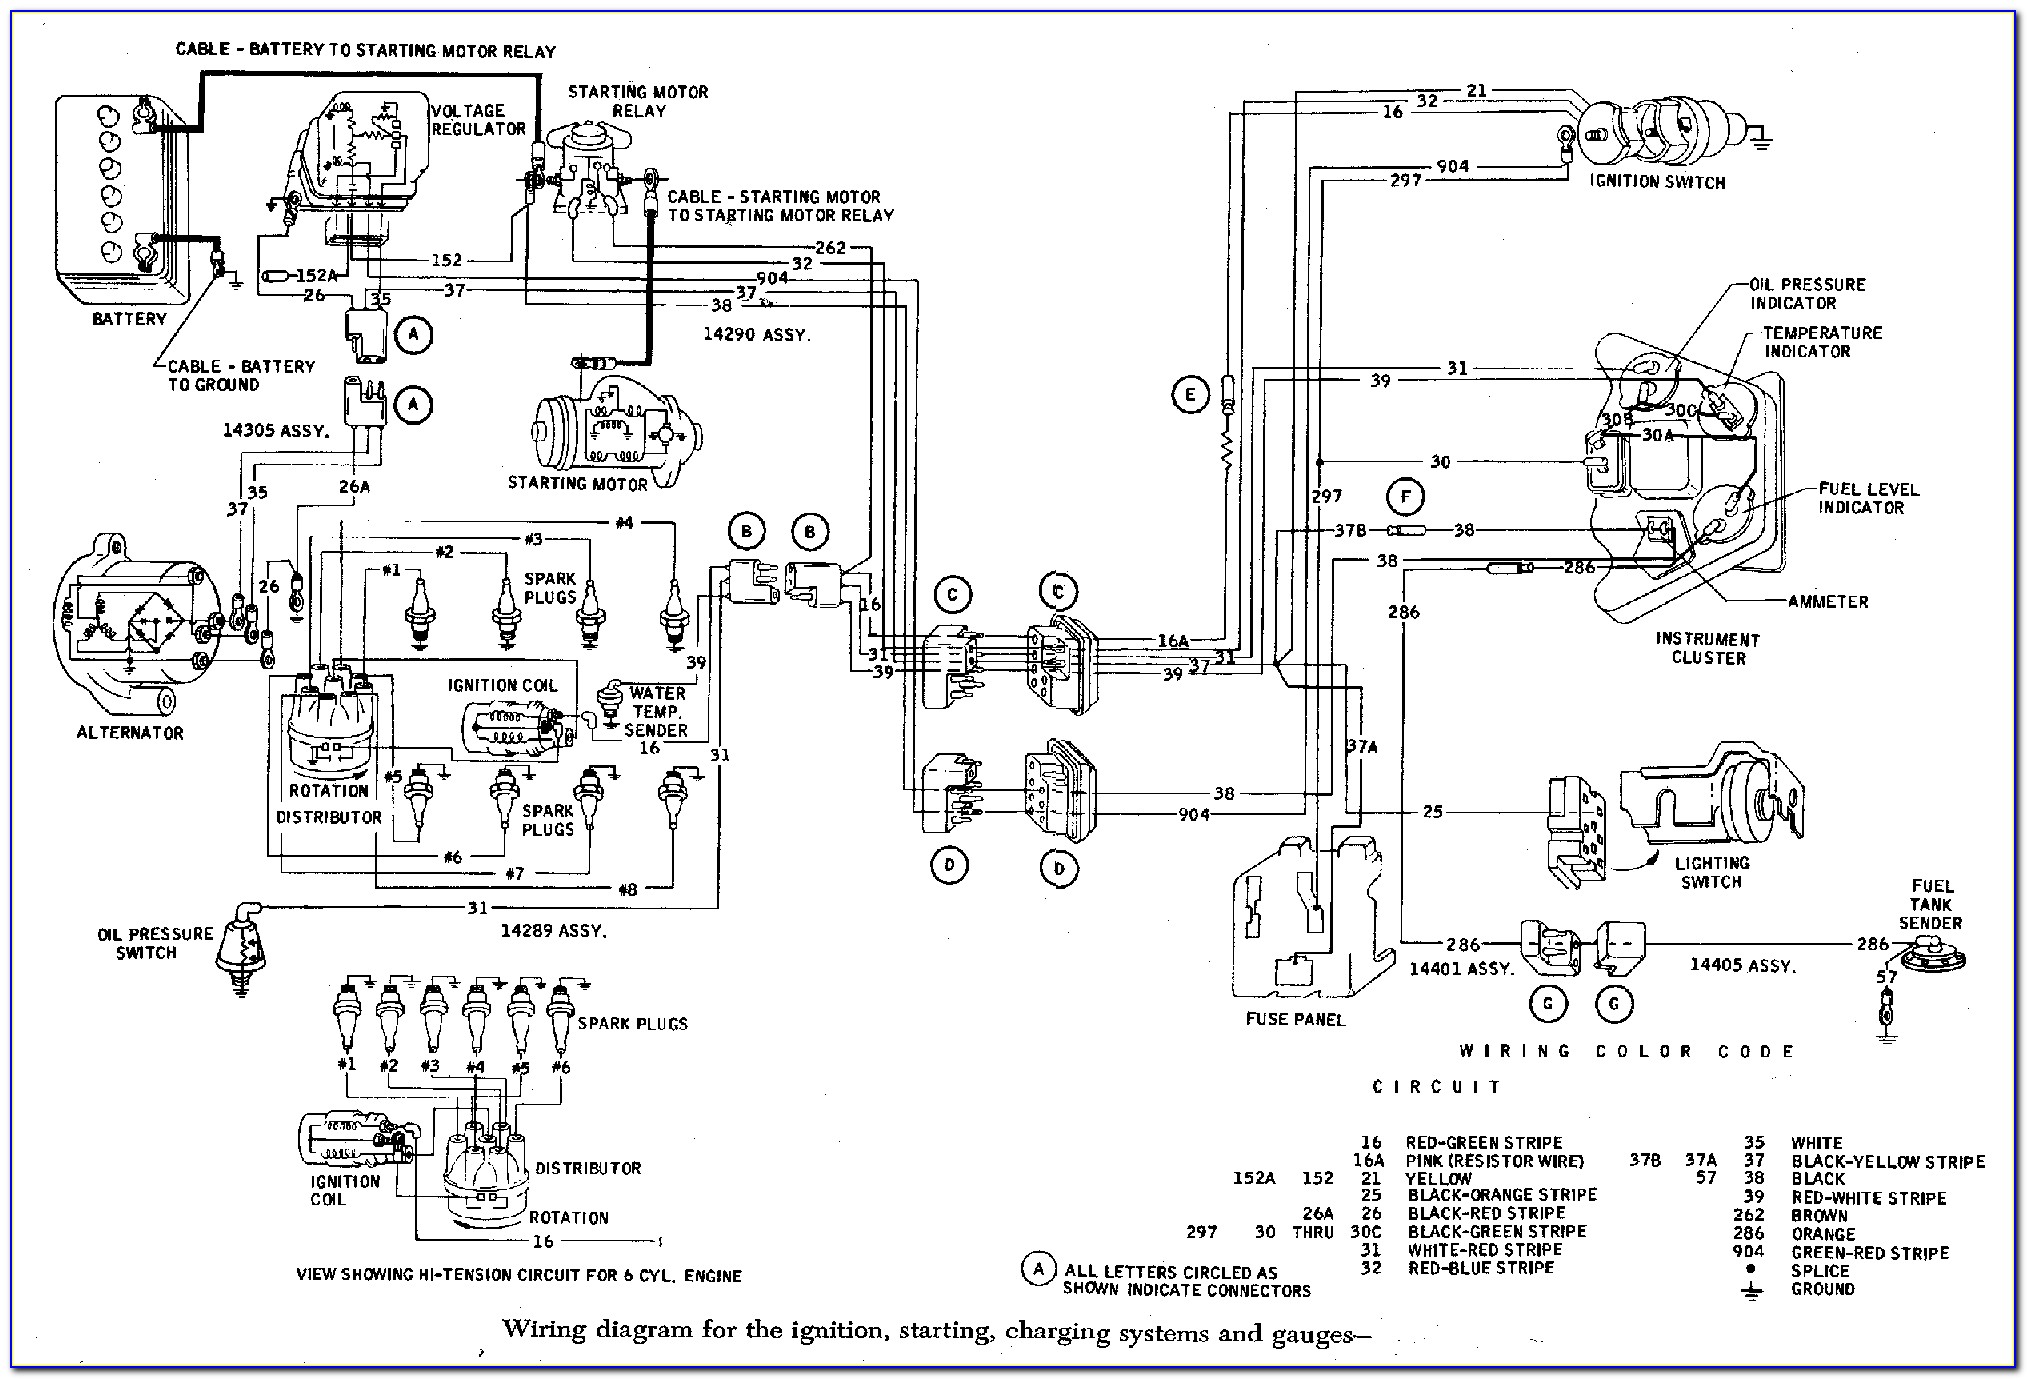 1969 Ford F100 Turn Signal Wiring Diagram